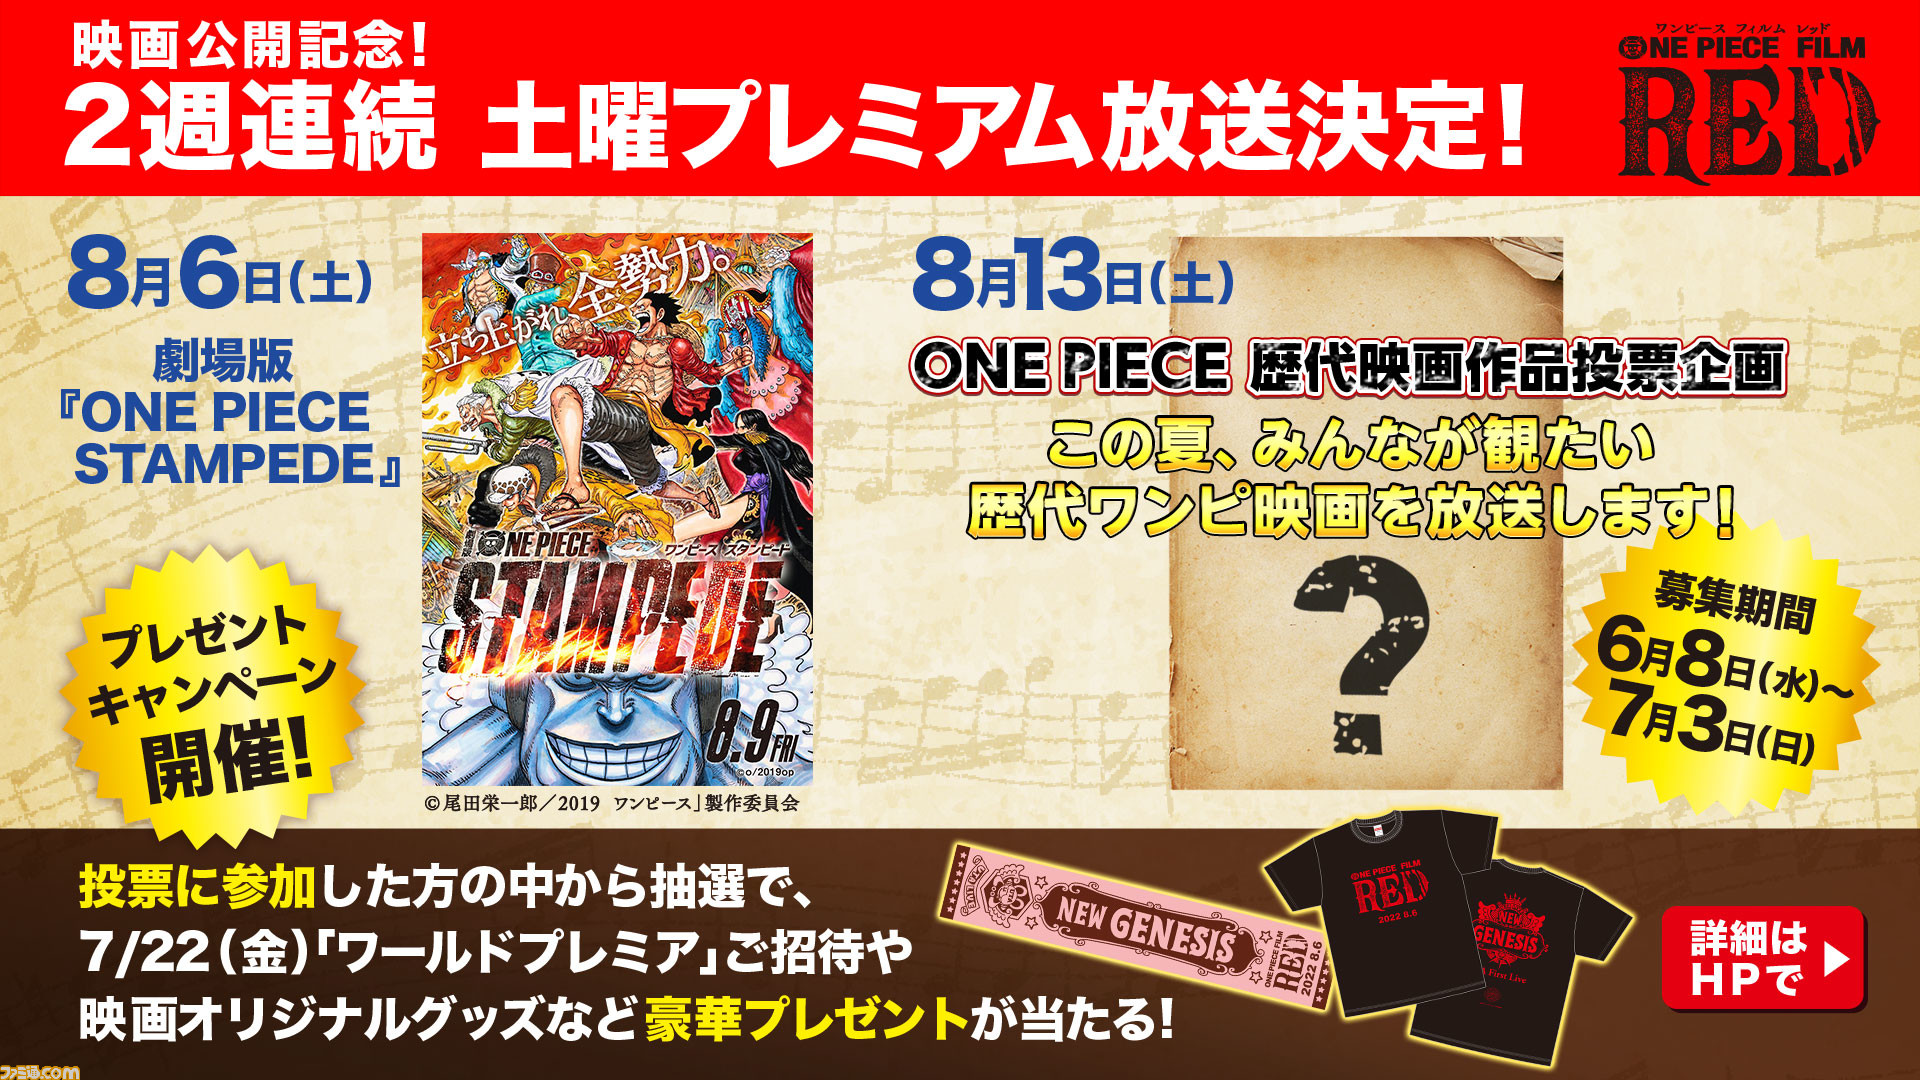 ワンピース 映画が2週連続テレビ放送 8 6は One Piece Stampede 8 13放送作品はファン投票で決定 ゲーム エンタメ最新情報のファミ通 Com